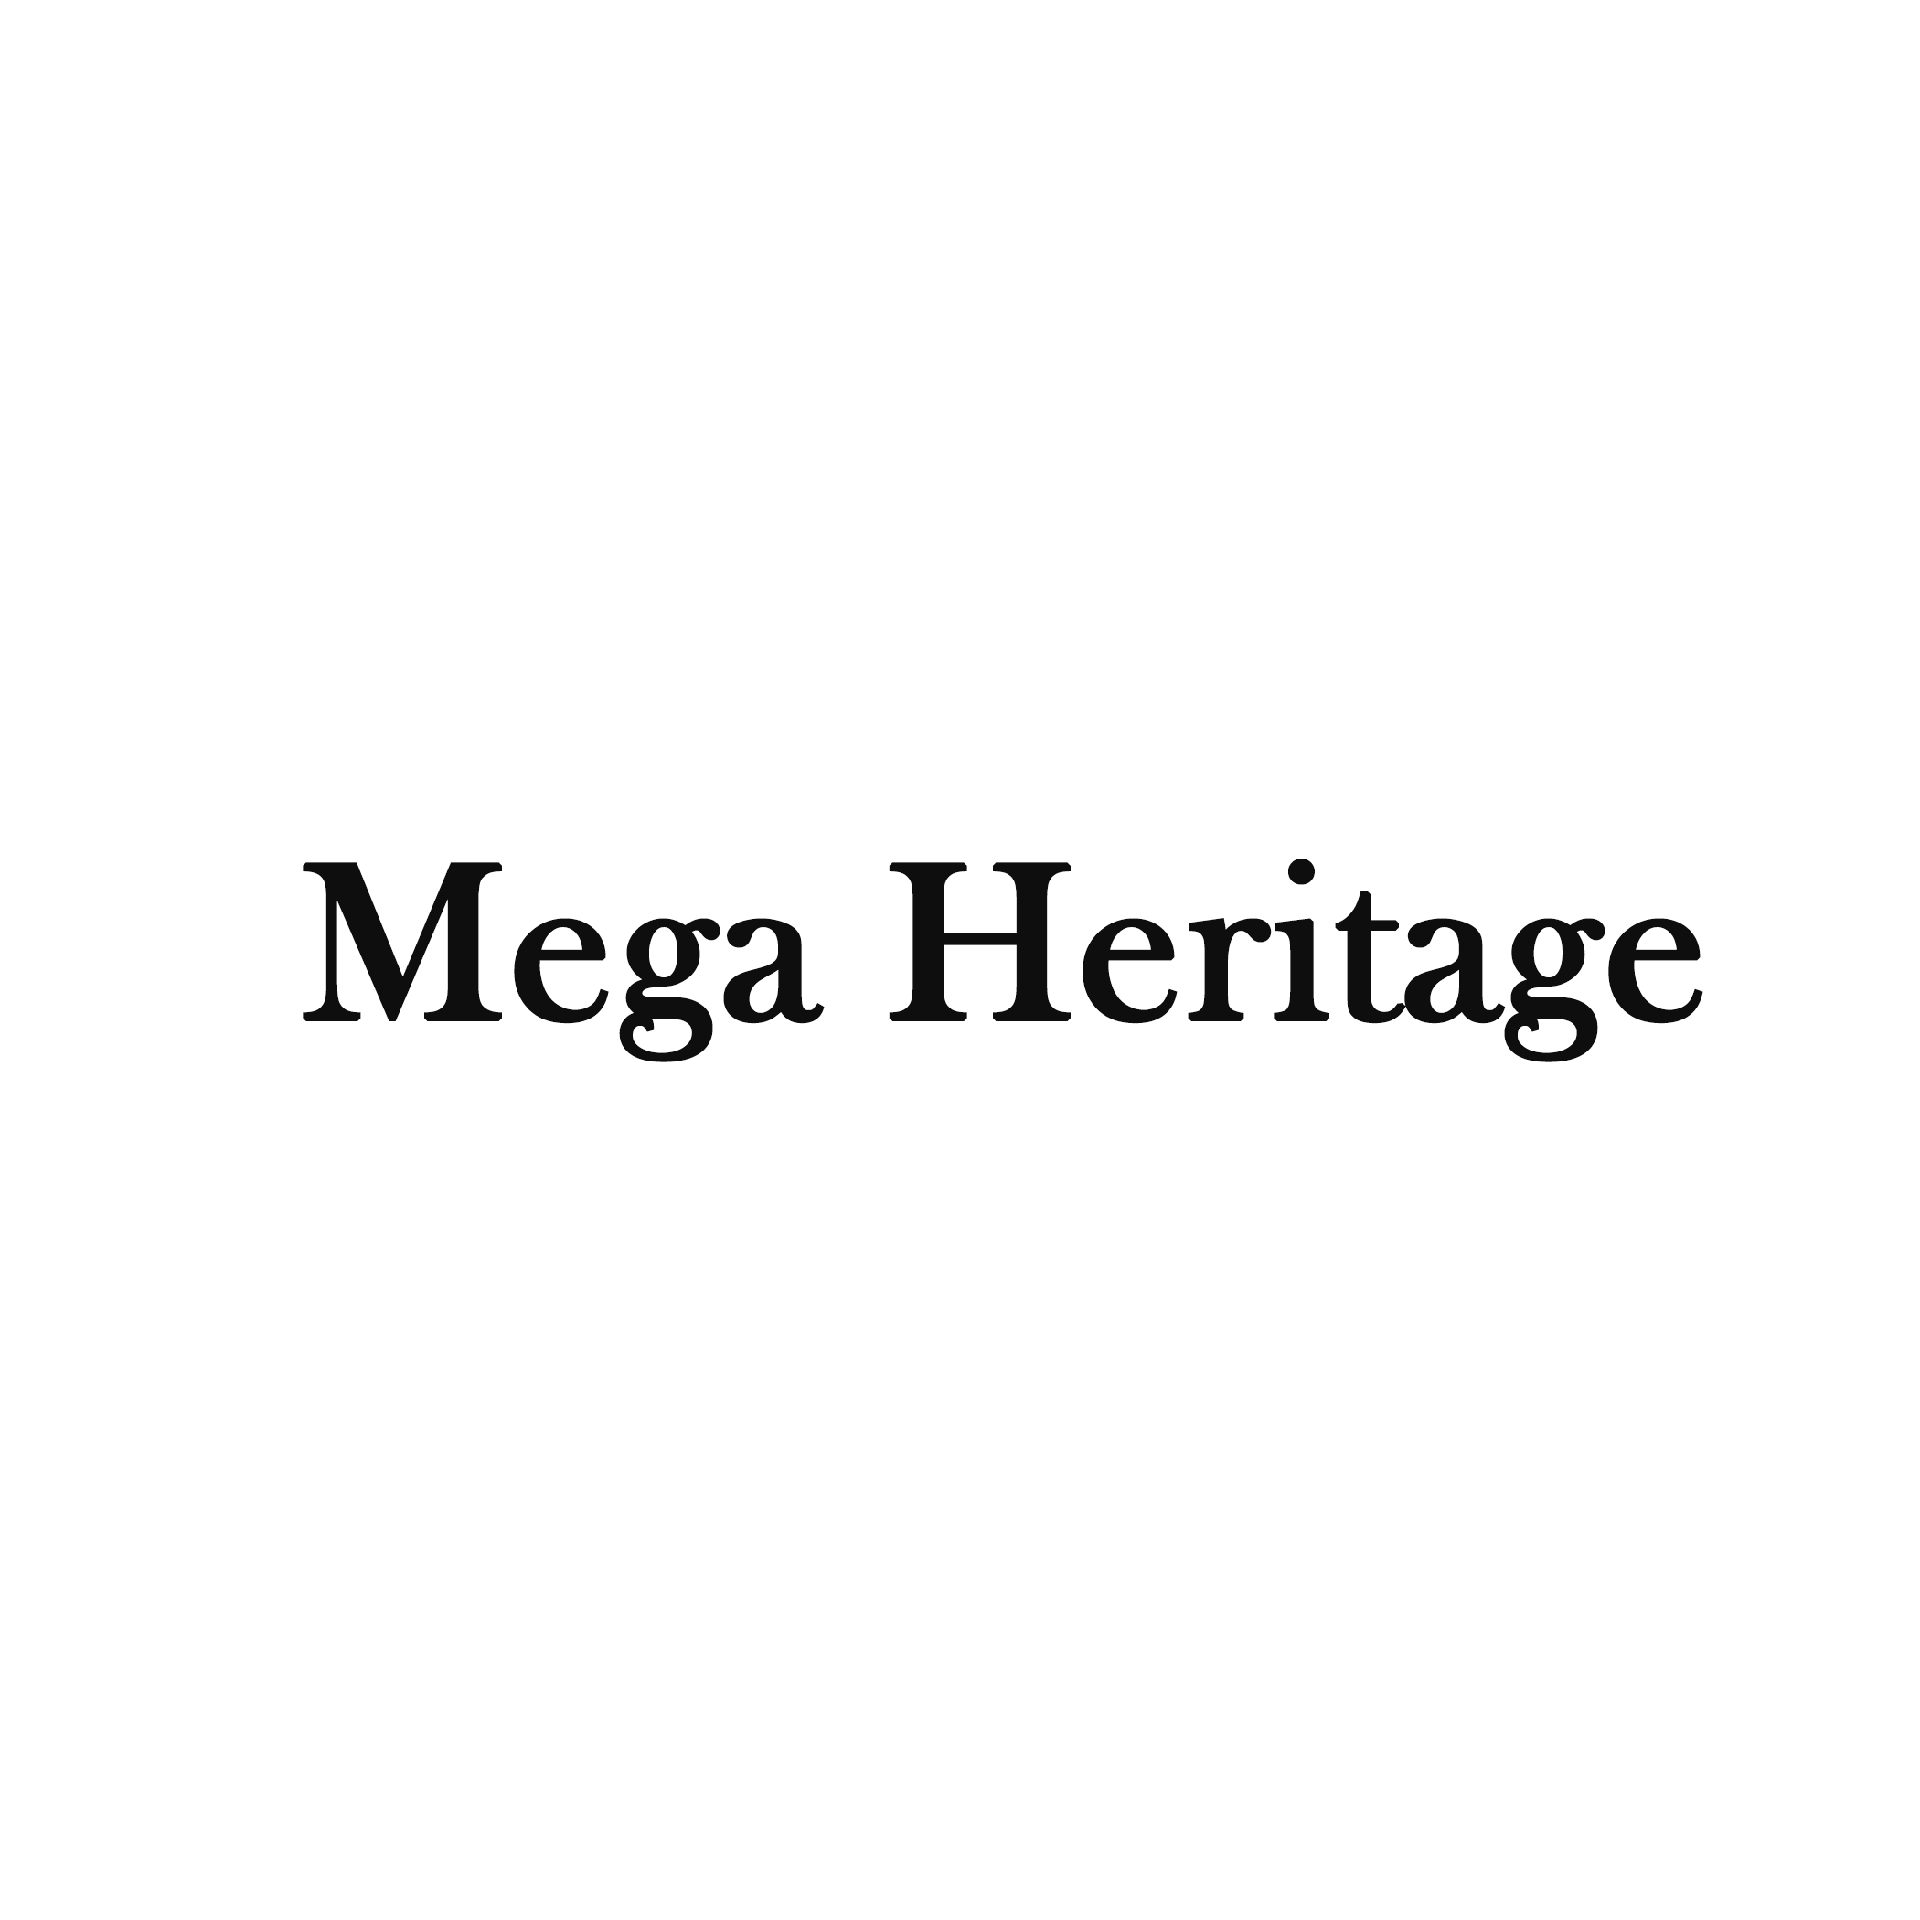 Mega Heritage